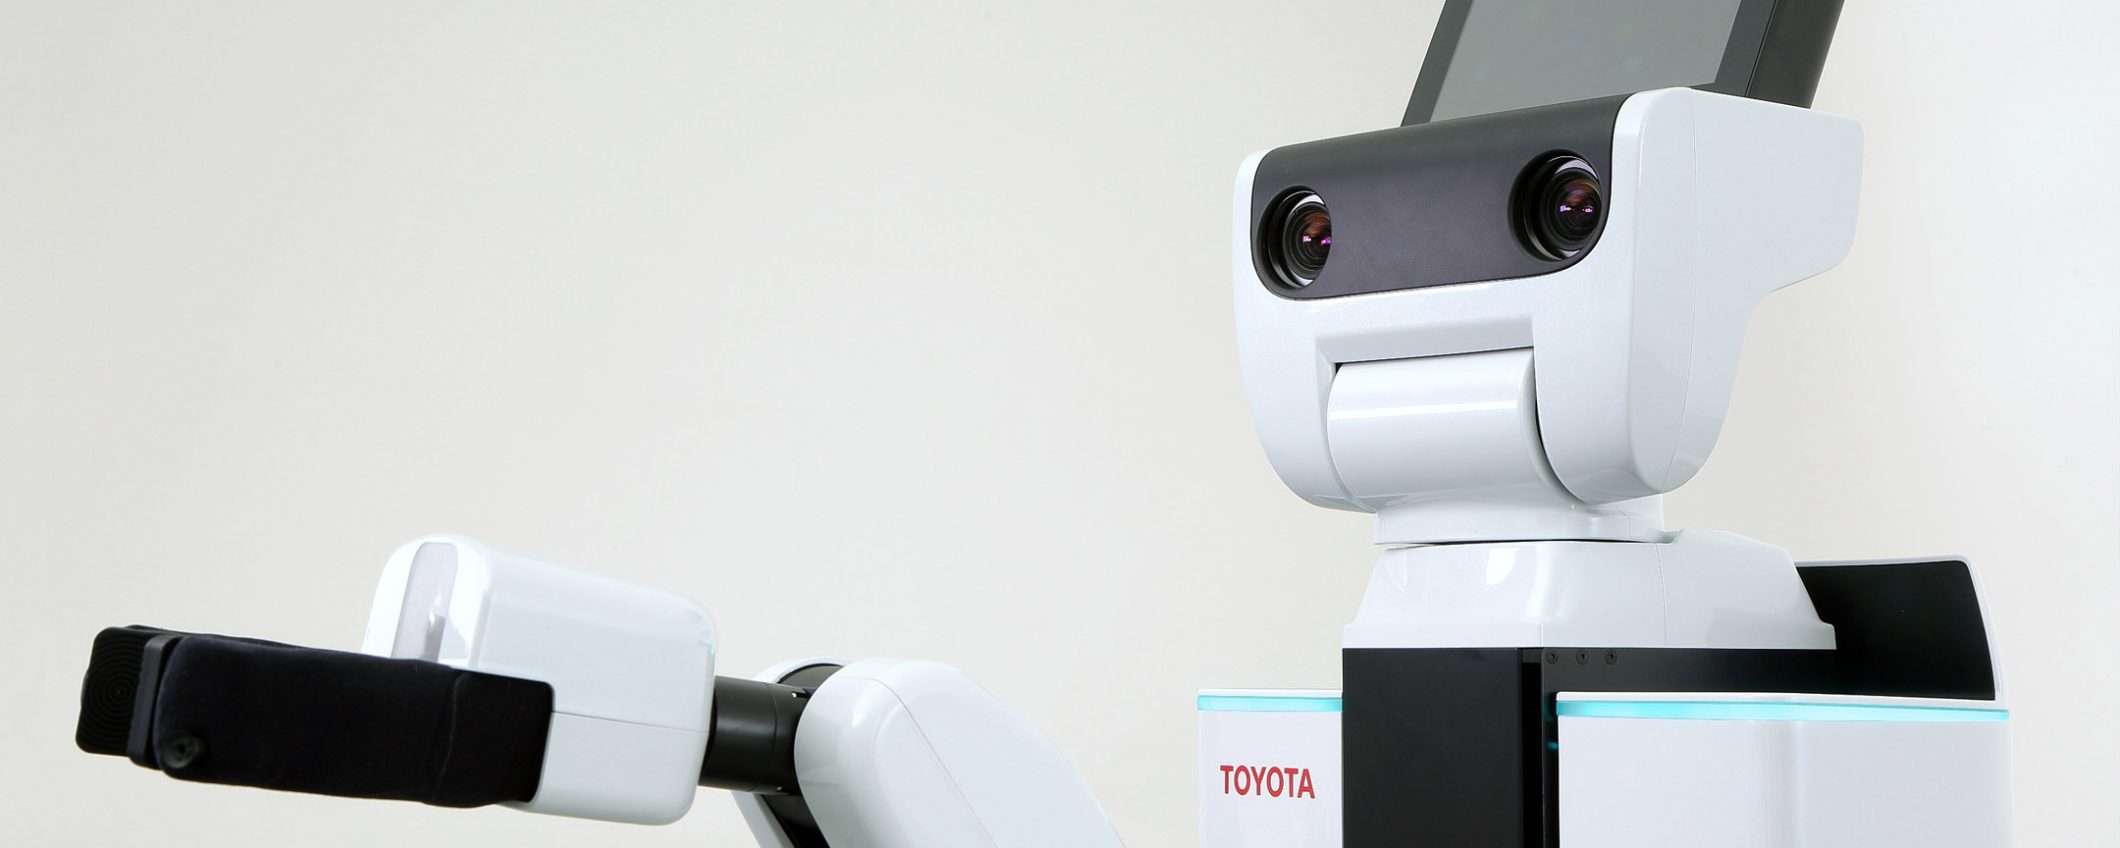 Toyota e PFN insieme per la robotica assistenziale